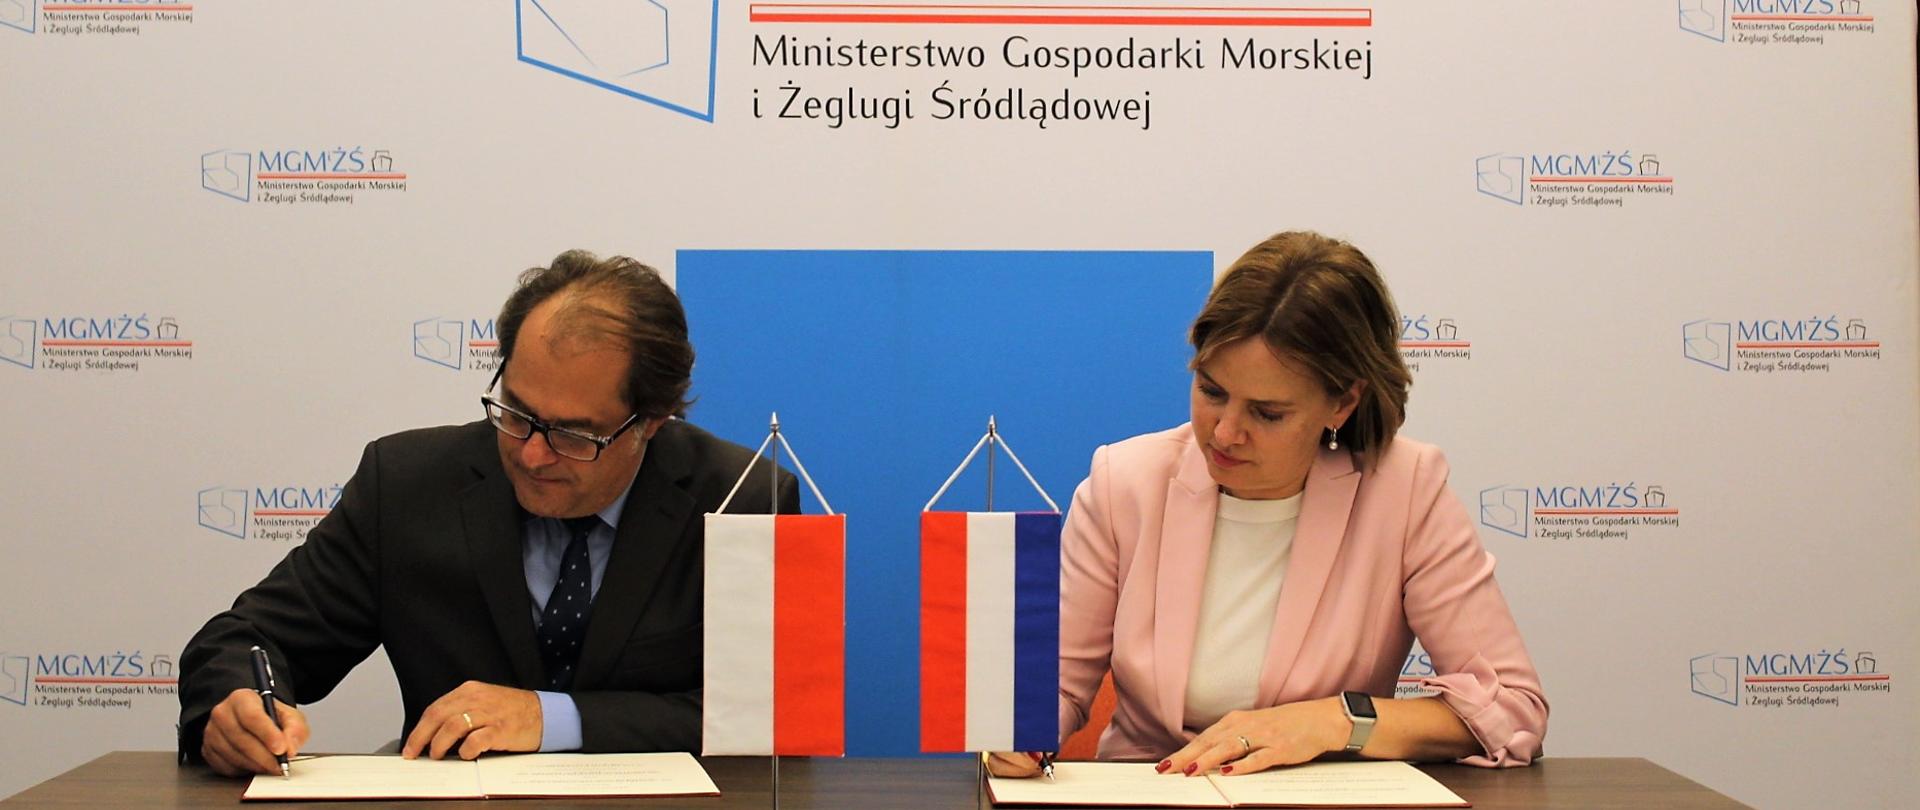 Minister Marek Gróbarczyk oraz Minister Cora van Nieuwenhuizen podpisują memorandum o współpracy polsko-holenderskiej 